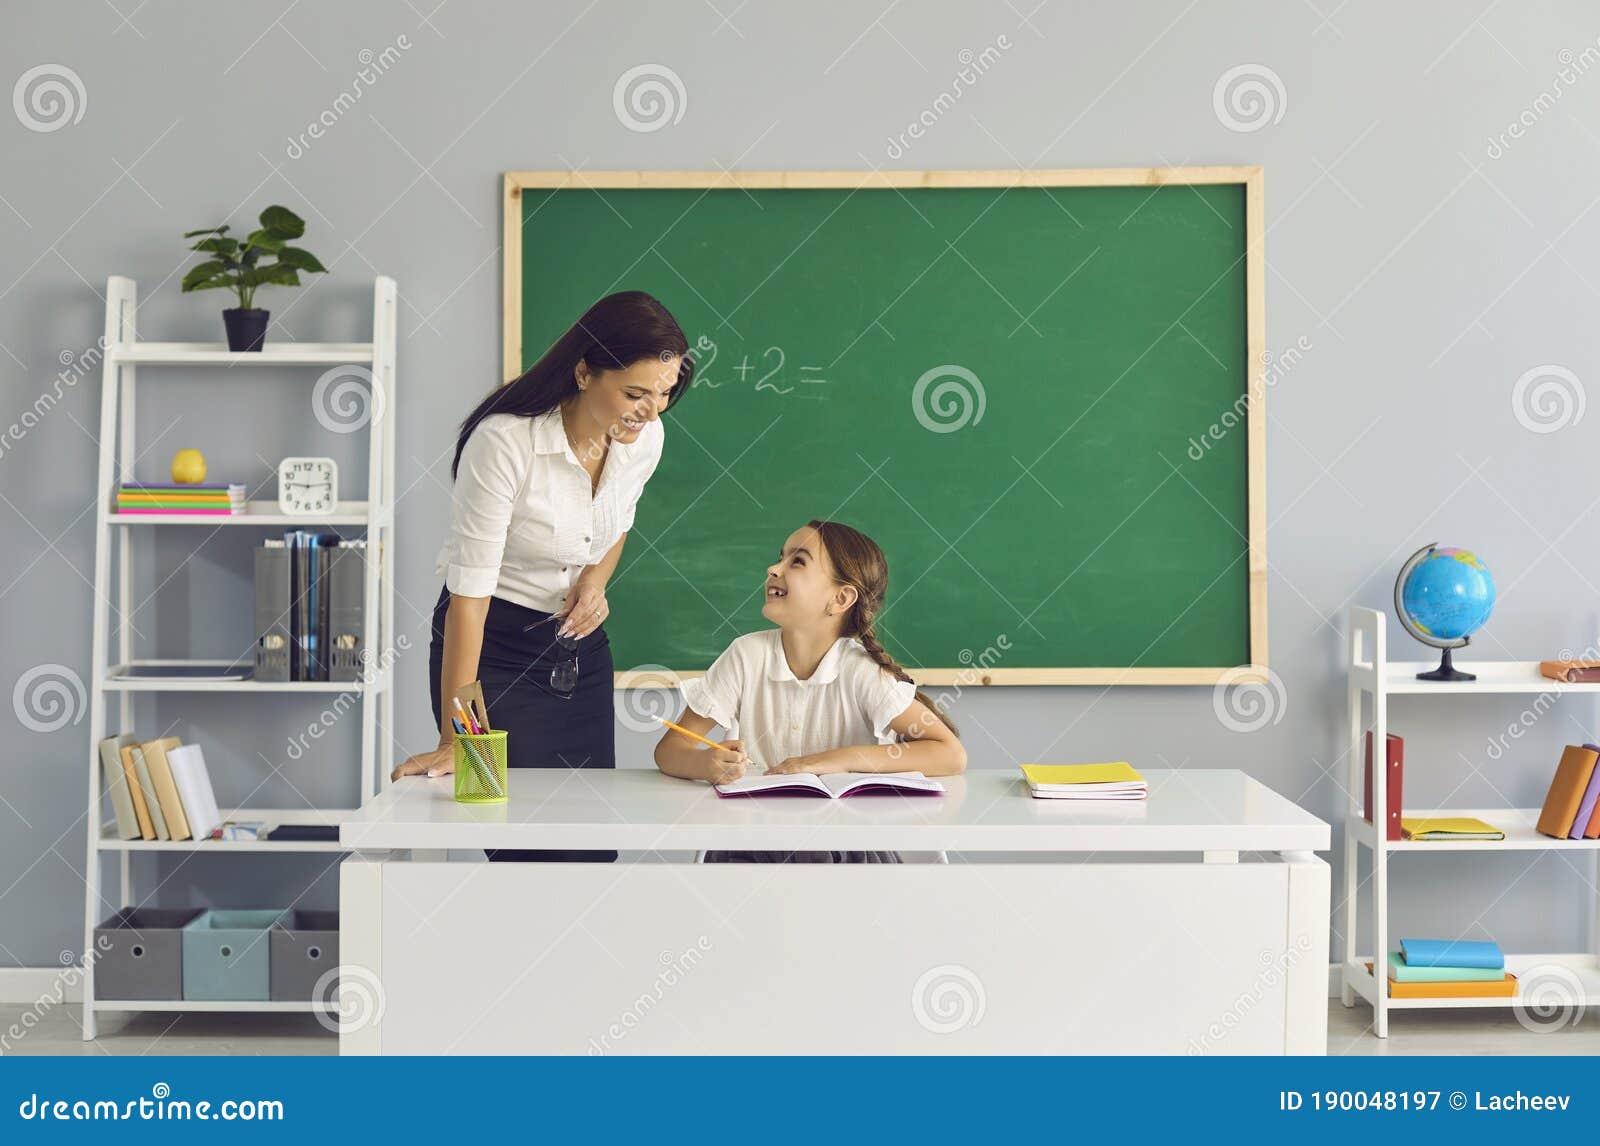 учителя трахают детей фото 3